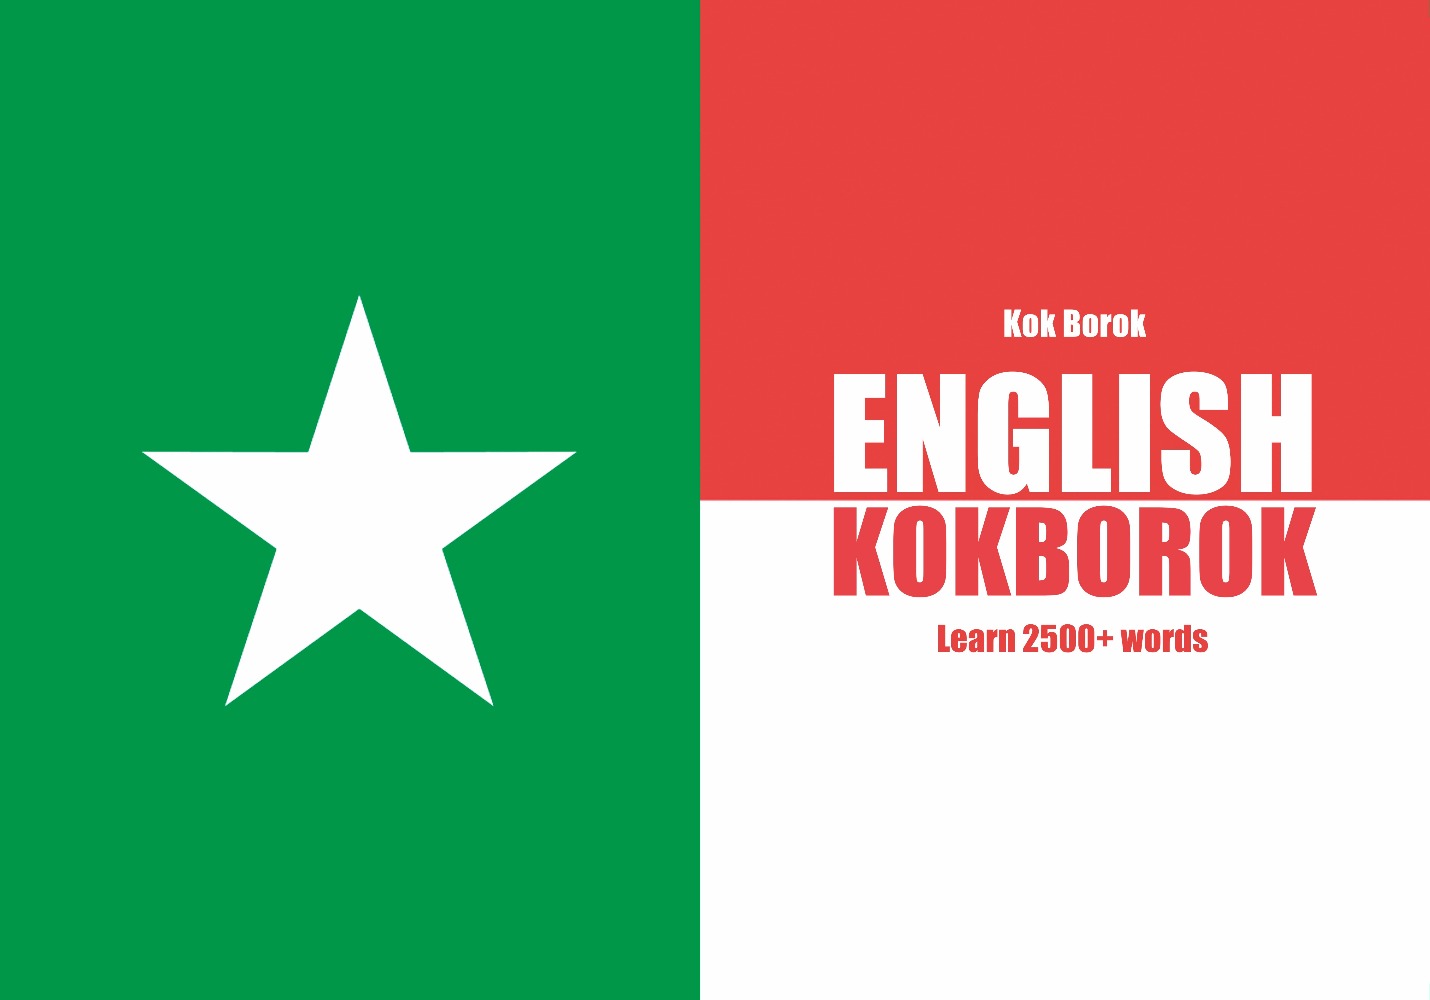 Kokborok language learning notebook cover